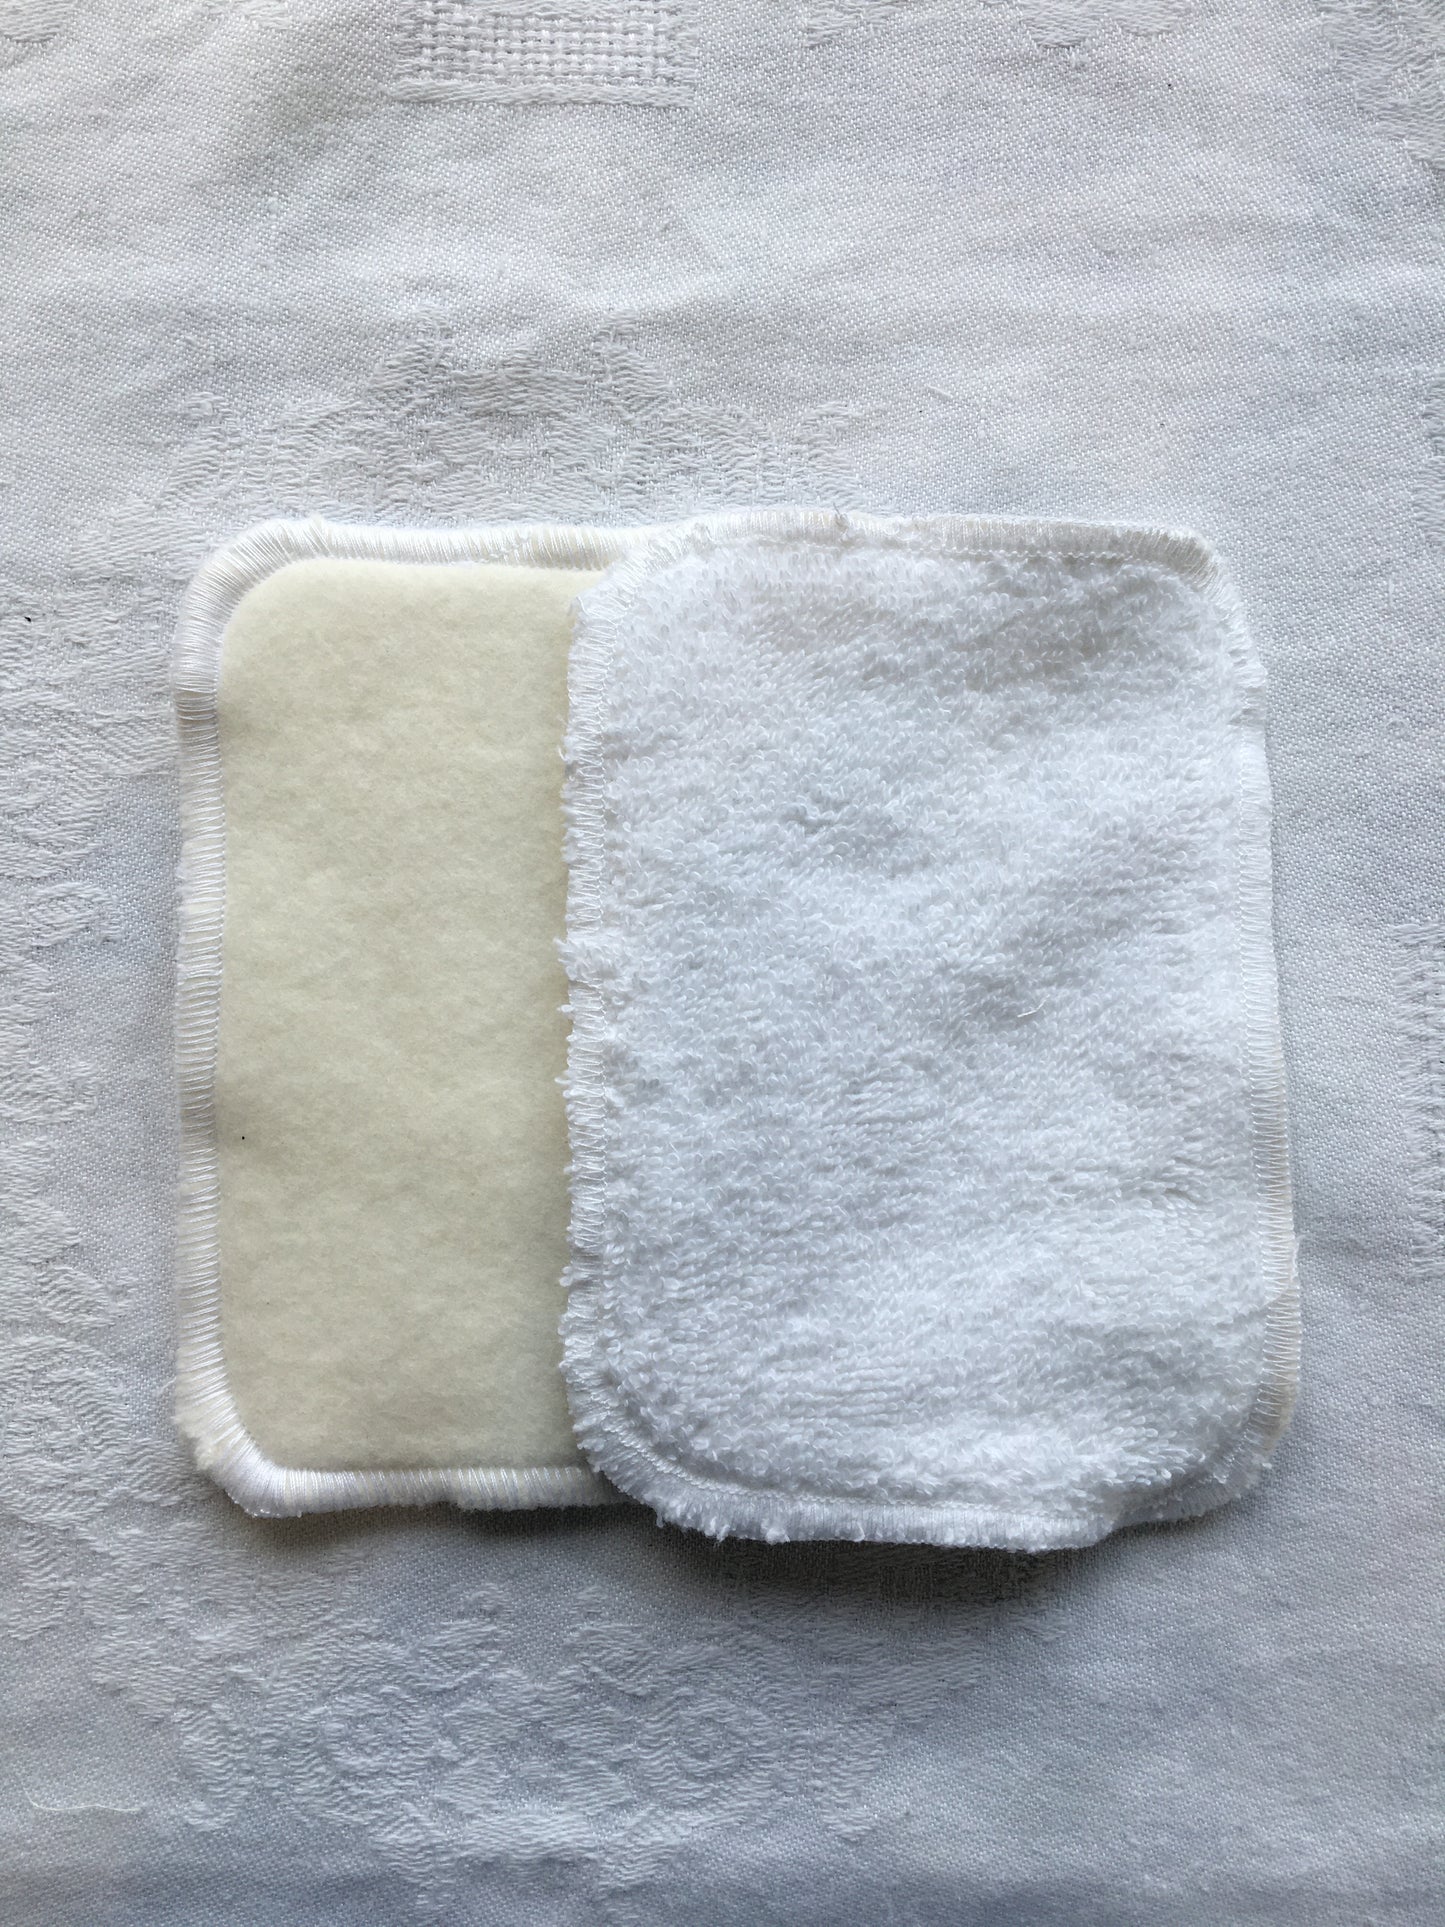 Tendresse - Lot de 5 lingettes lavables en coton BIO